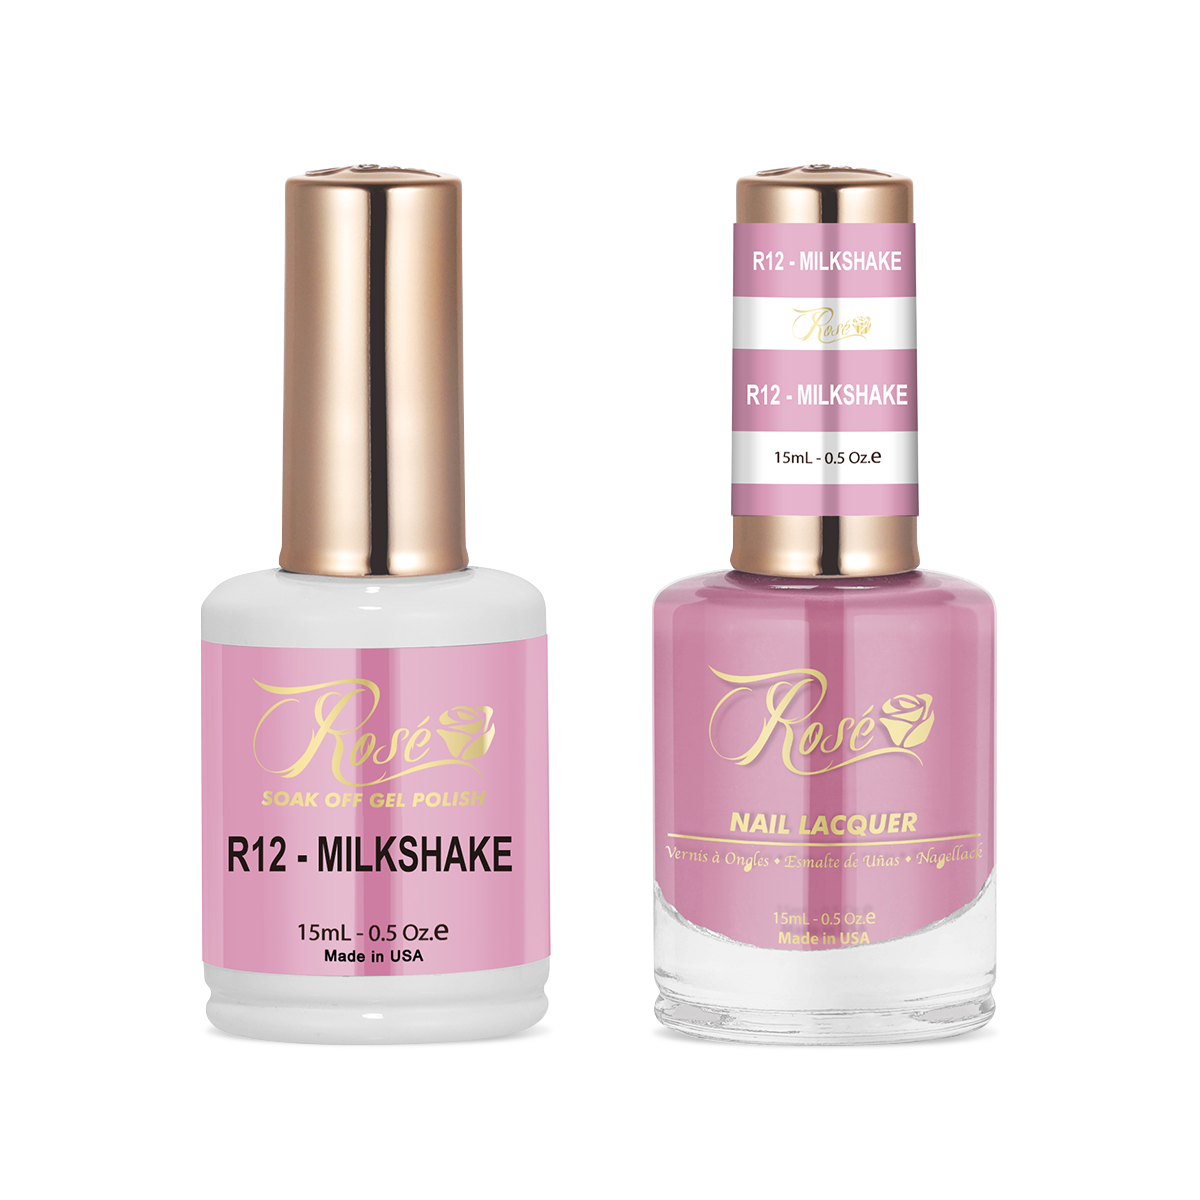 Rosé Duo - R012 Milkshake